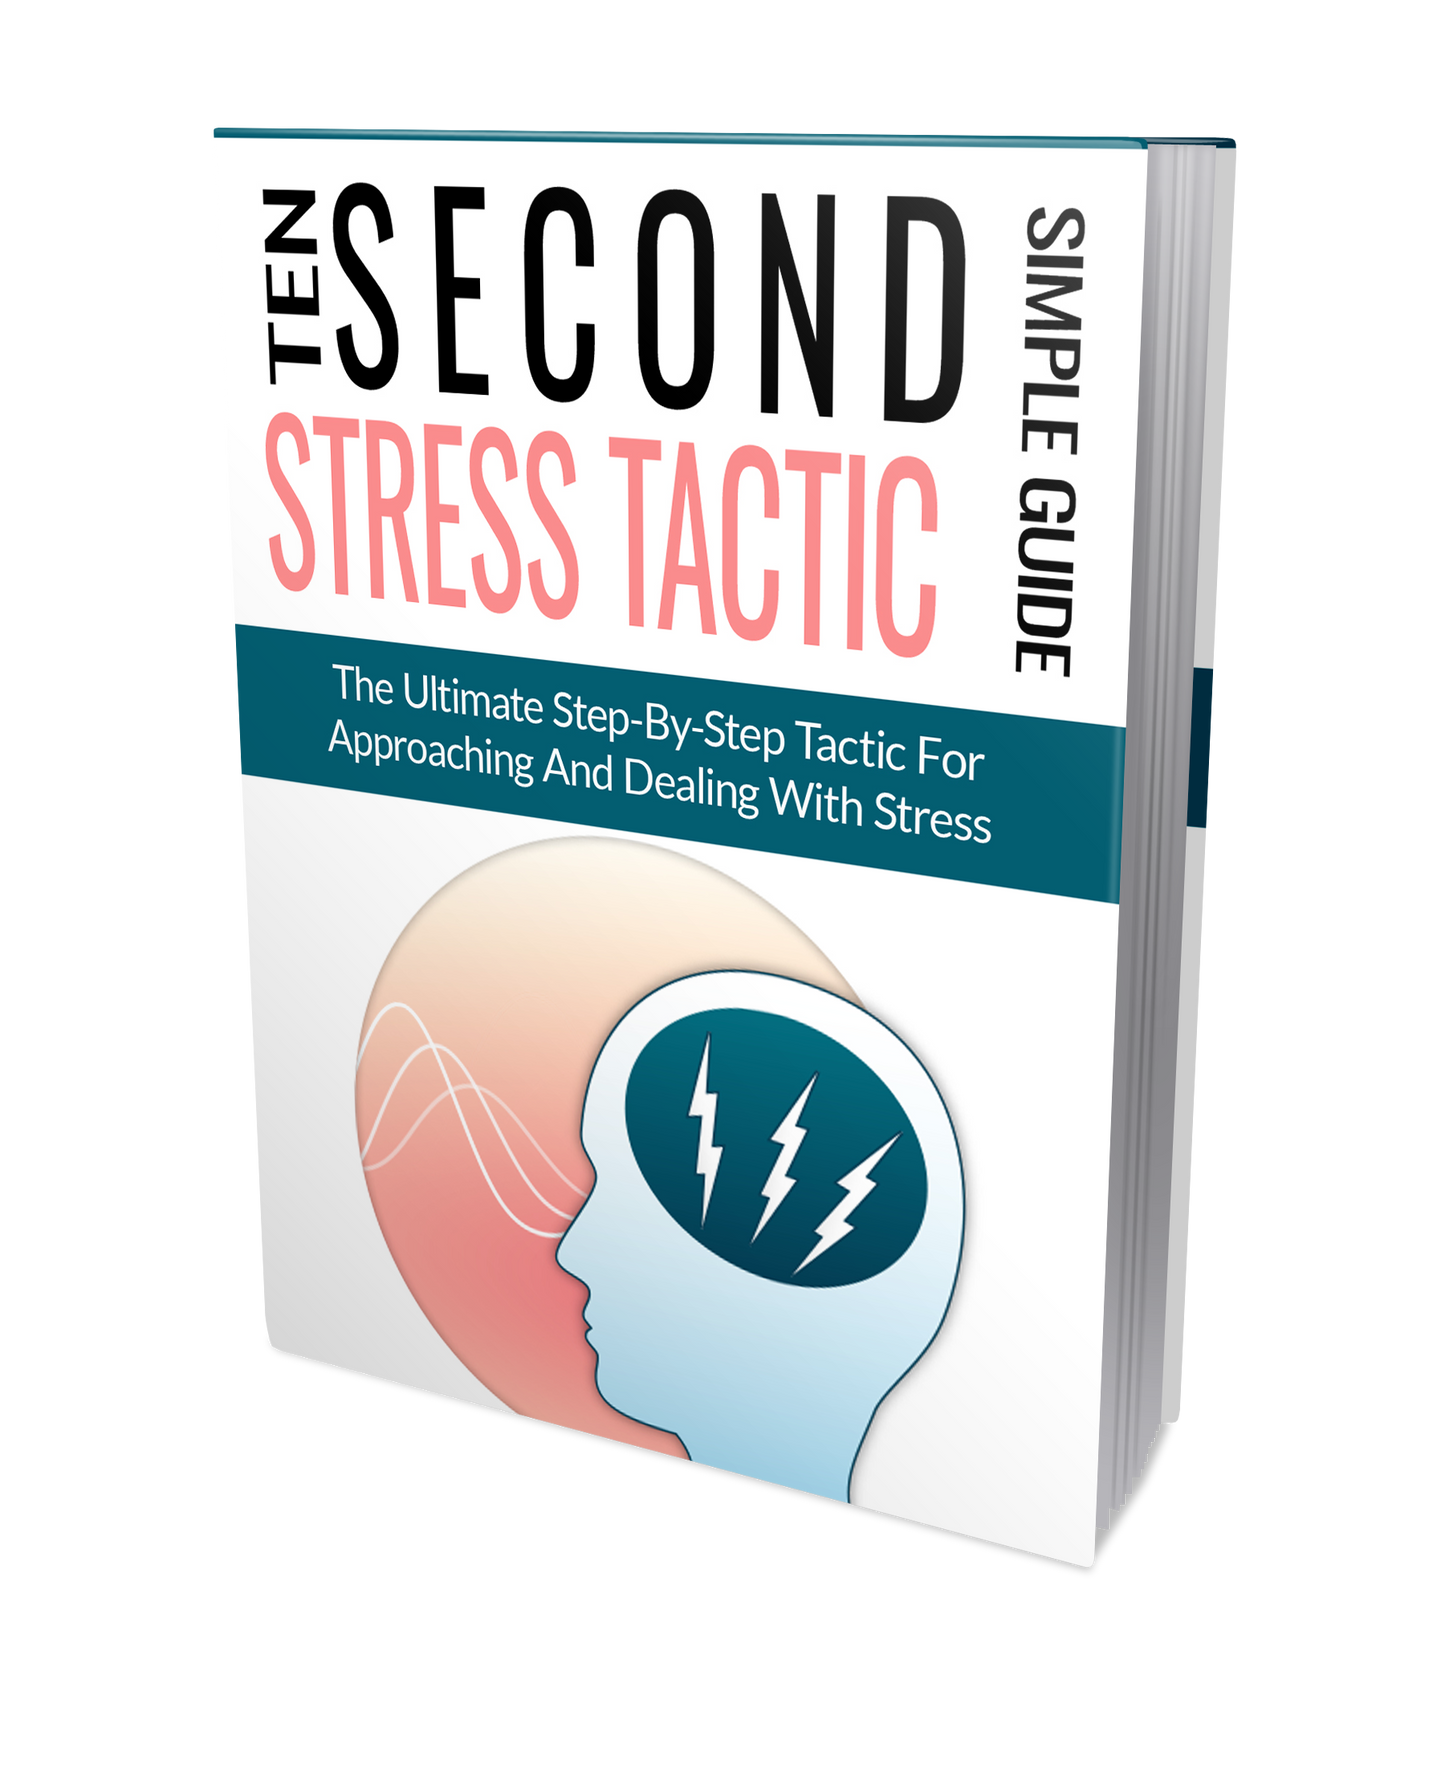 Ten Second Stress Tactic